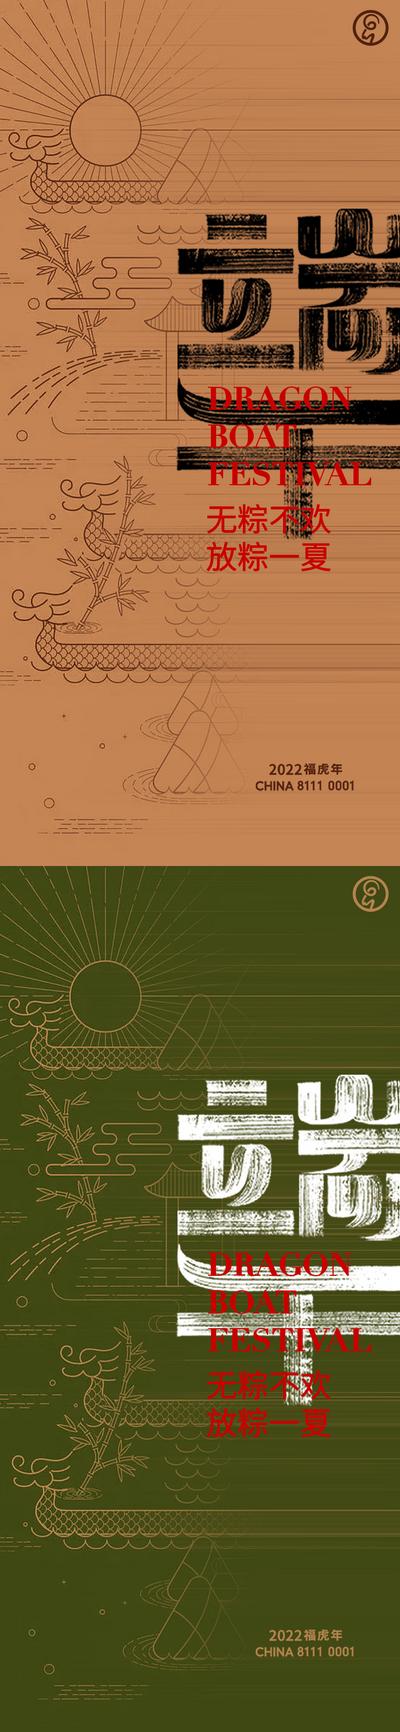 南门网 海报 中国传统节日 端午节   龙舟 园林 粽子  中式 创意 系列